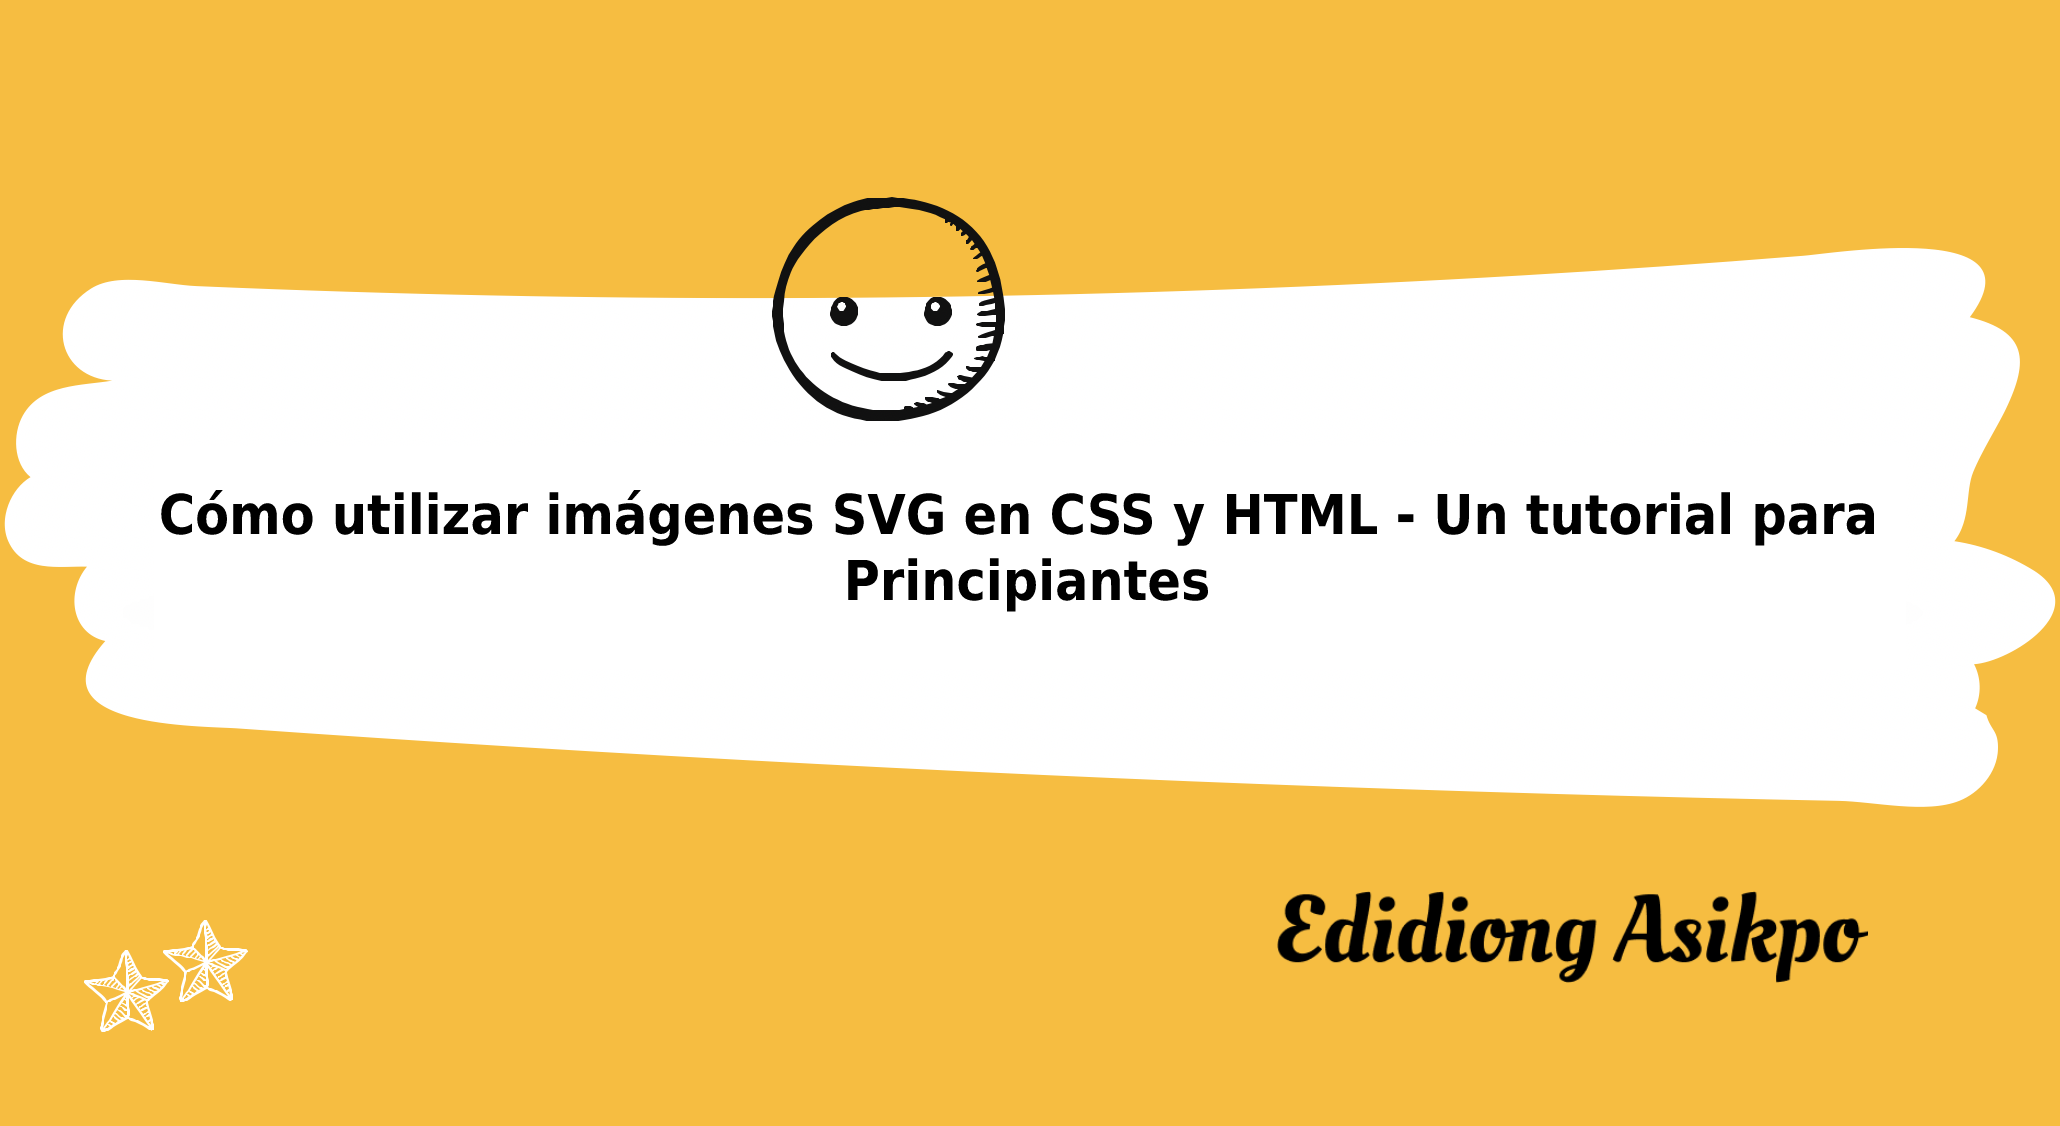 Cómo utilizar imágenes SVG en CSS y HTML: Un tutorial para principiantes